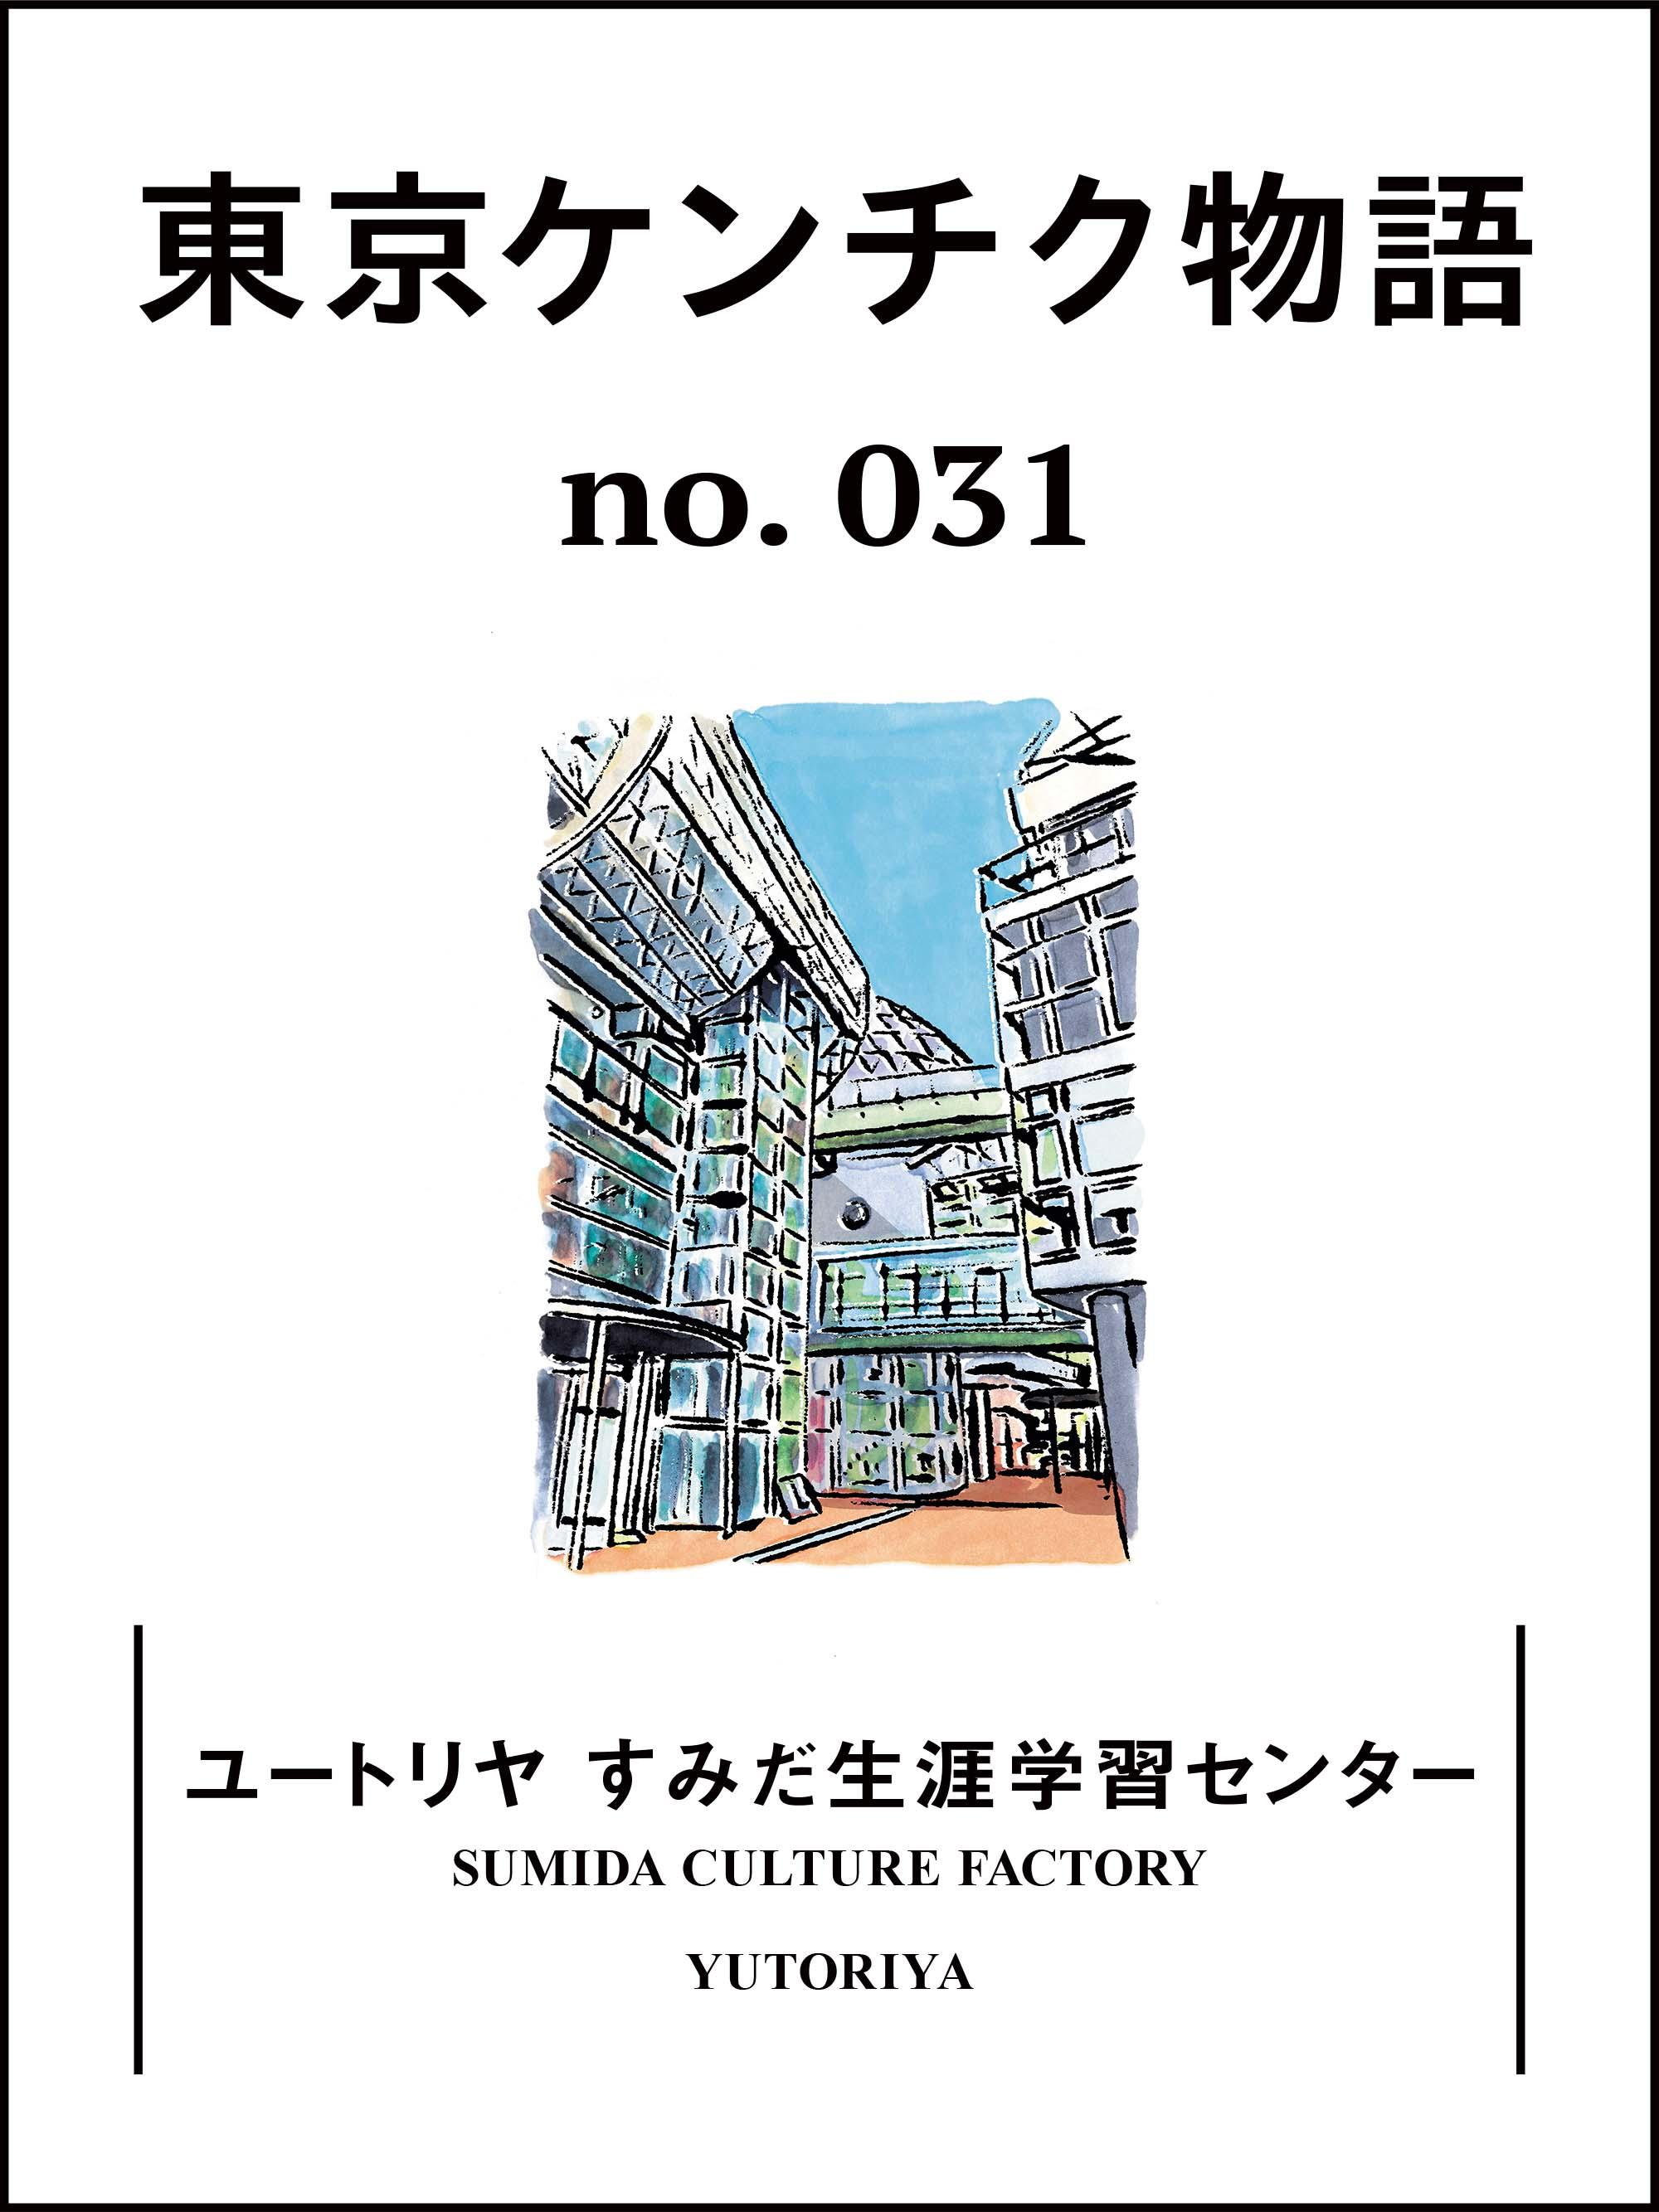 近所の人々の暮らしの一部になった幸せな名建築「ユートリヤ すみだ生涯学習センター」：東京ケンチク物語 vol.31